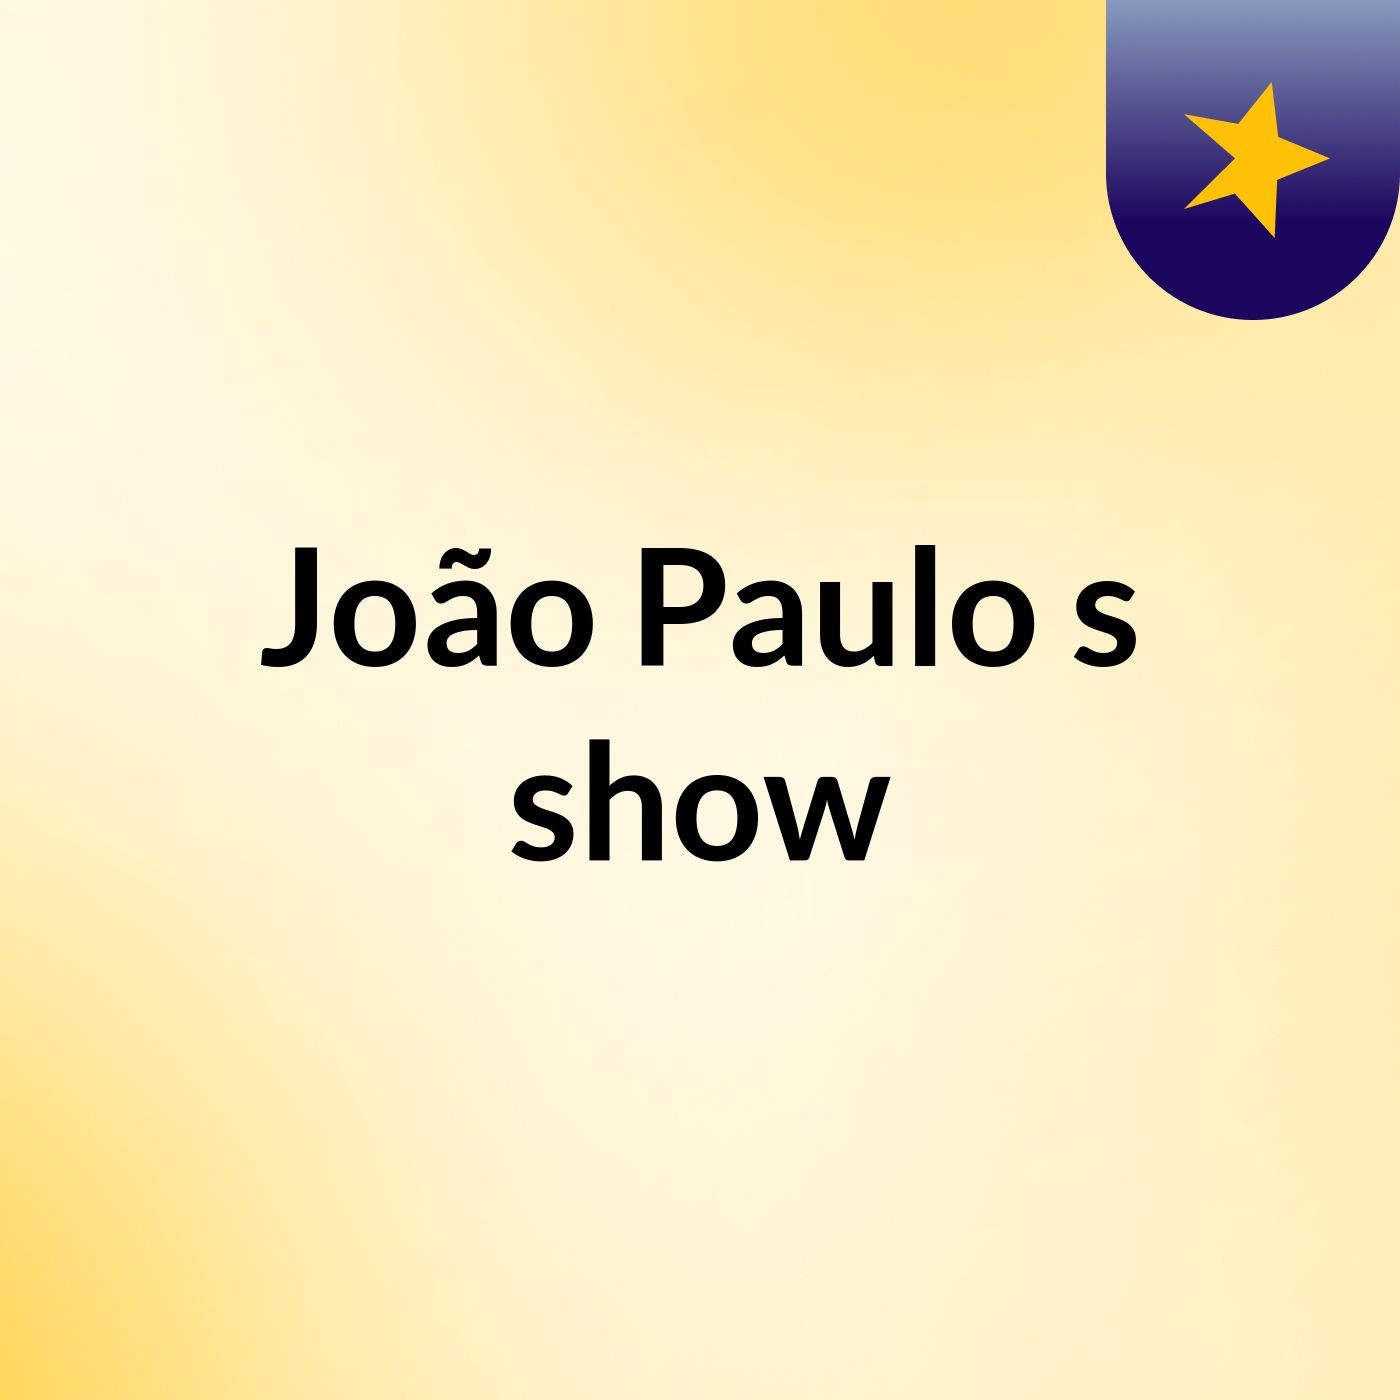 João Paulo's show